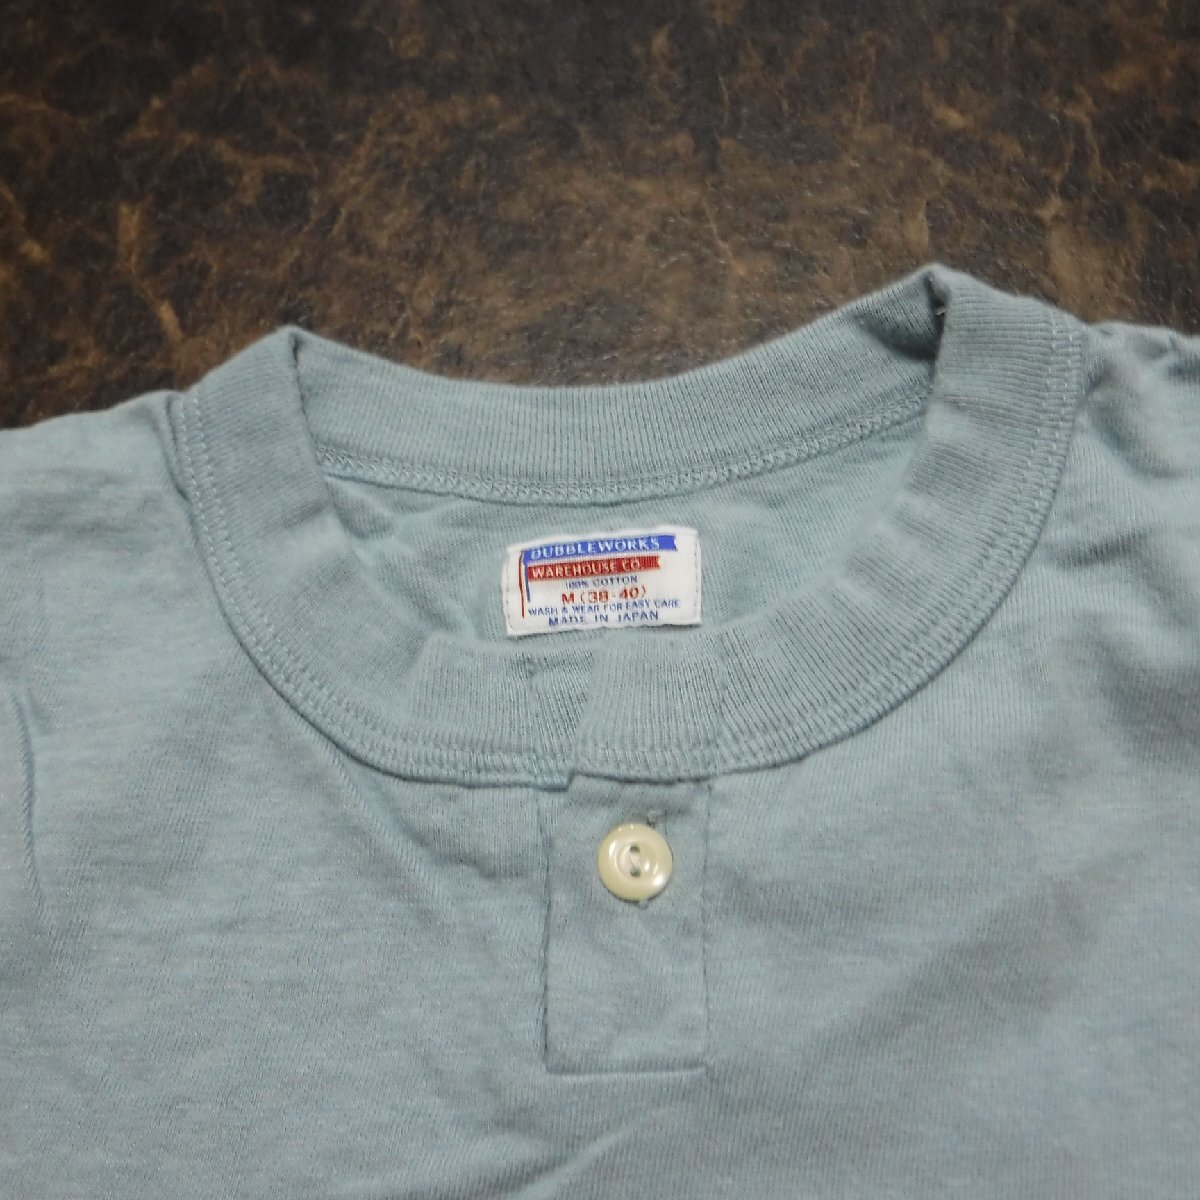 TT391 ウエアハウス ダブルワークス 新品 ヘンリーネック 半袖Tシャツ M(38-40) 定価5500円 ブルー 日本製 丸胴 無地 DUBBLEWORKSの画像3